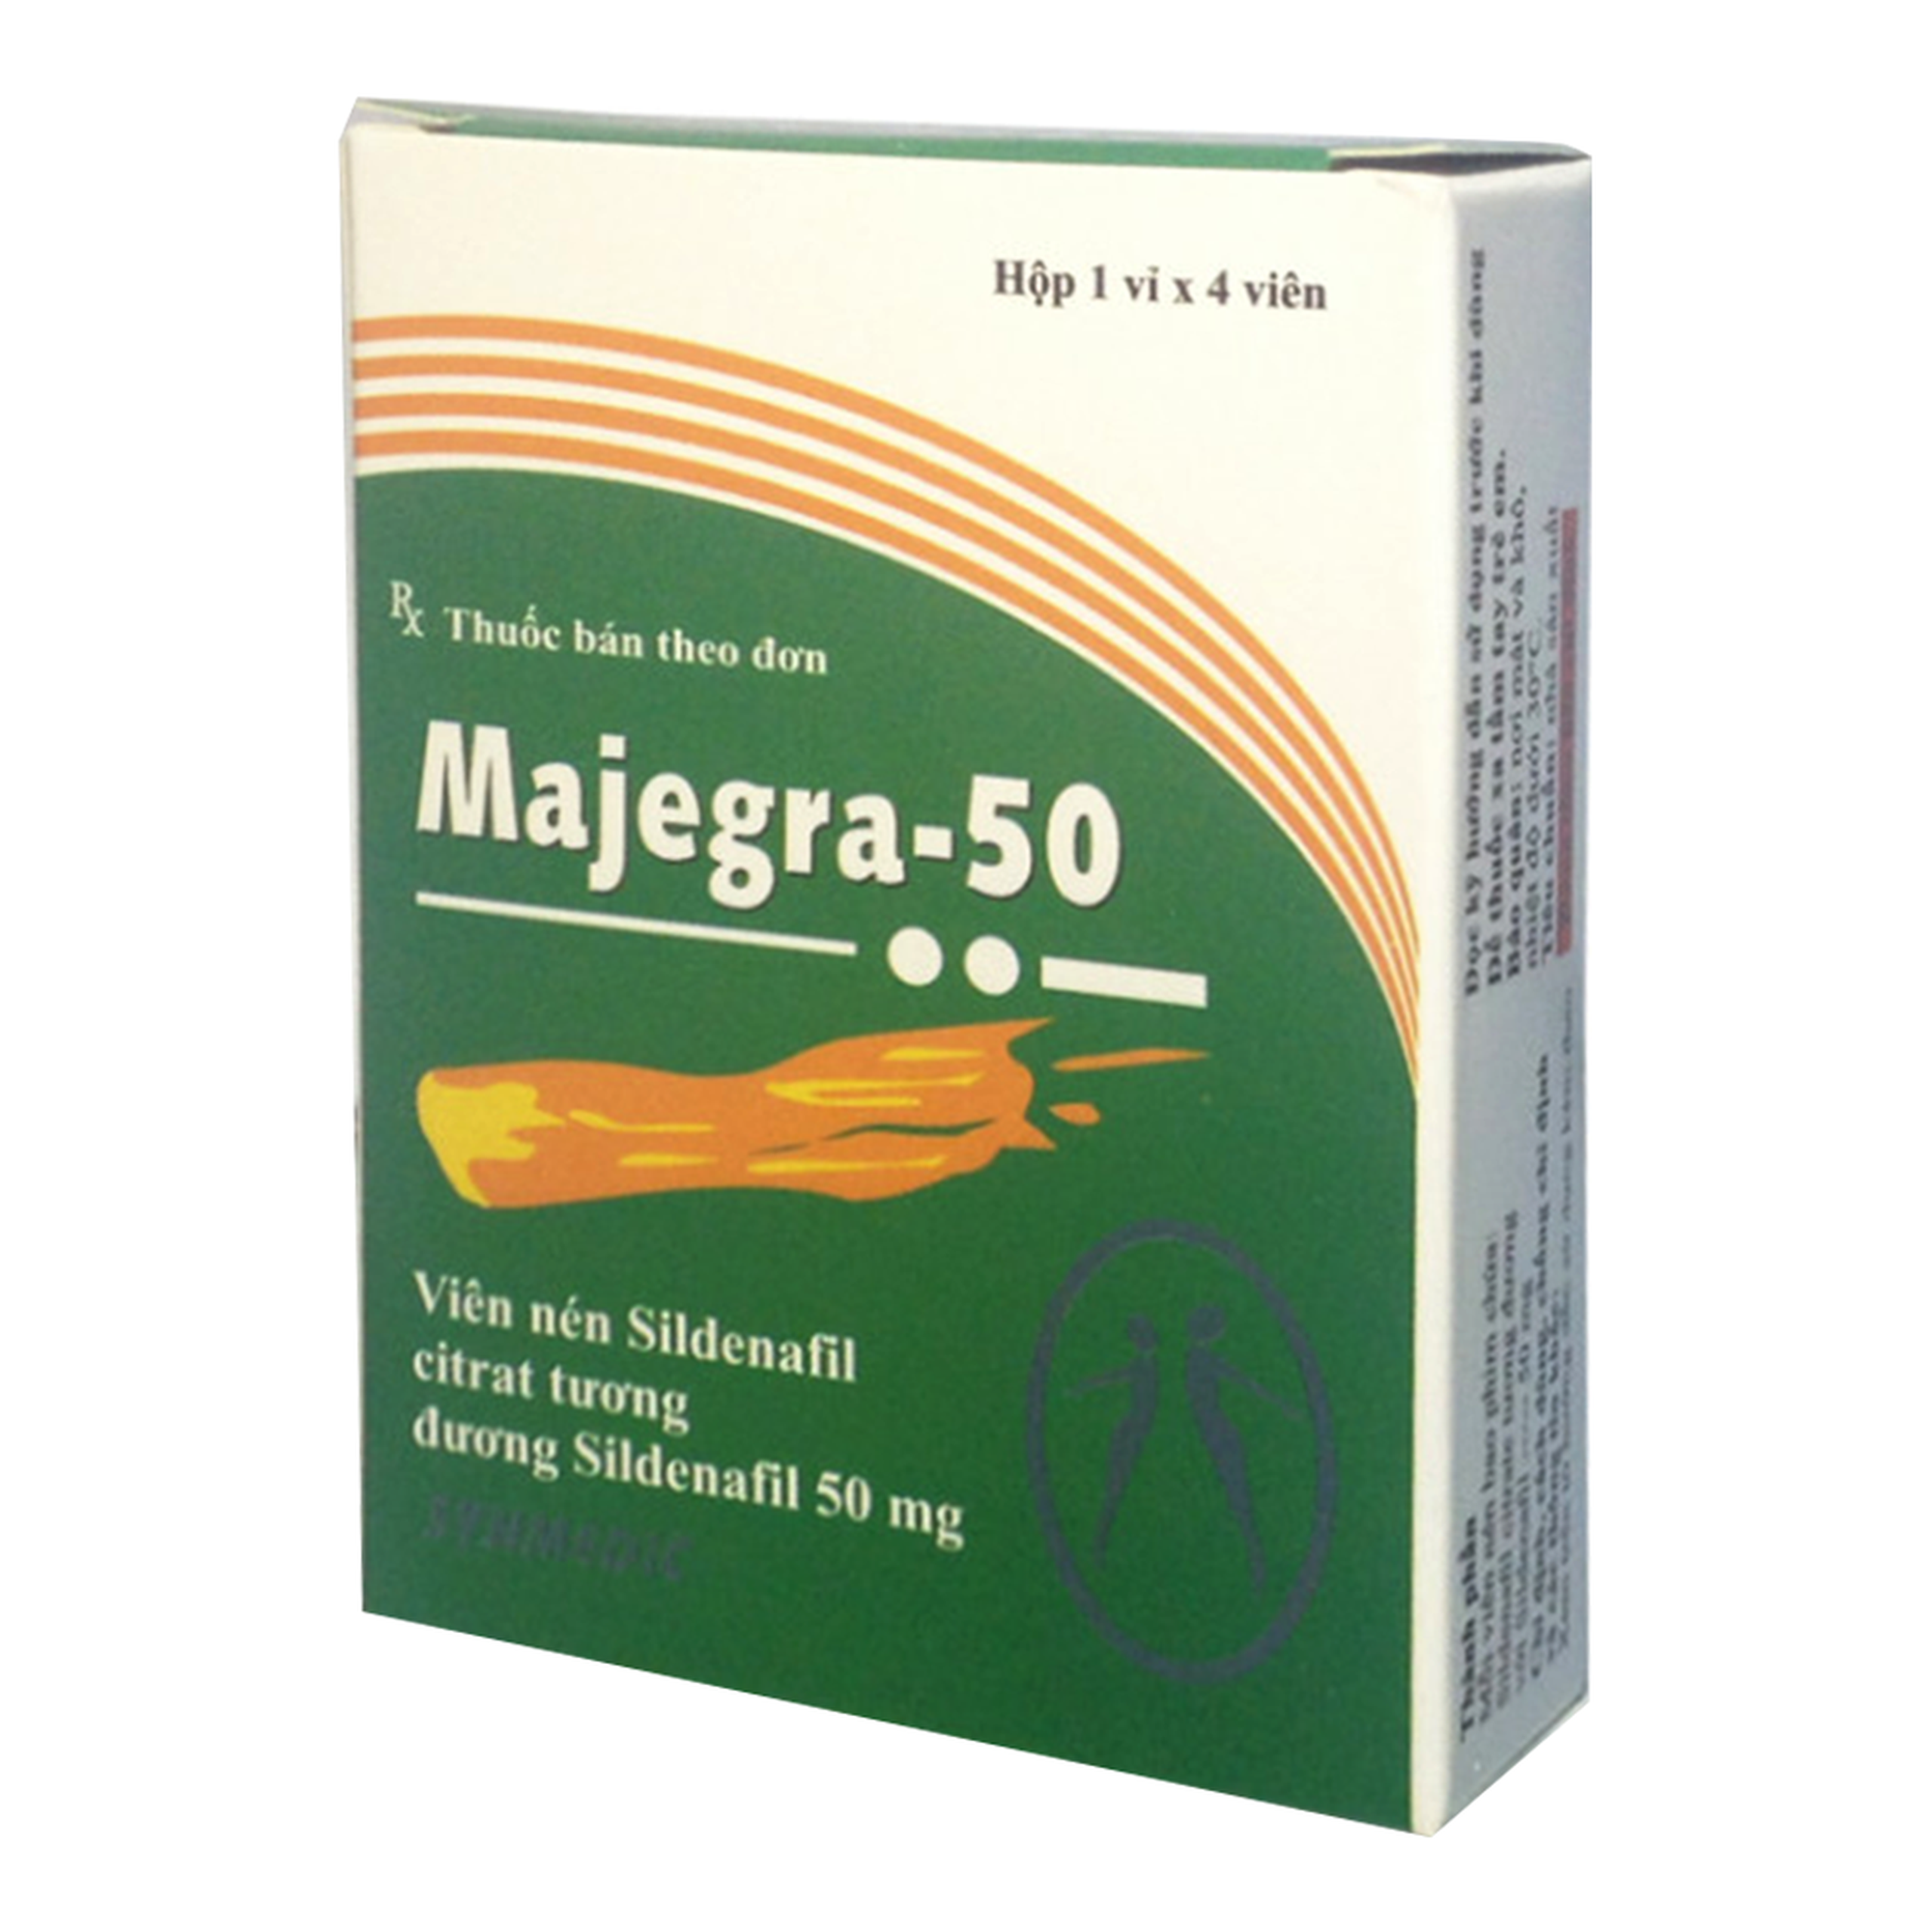 Viên nén Majegra-50 Synmedic điều trị tình trạng suy chức năng gây cương ở nam giới (1 vỉ x 4 viên)